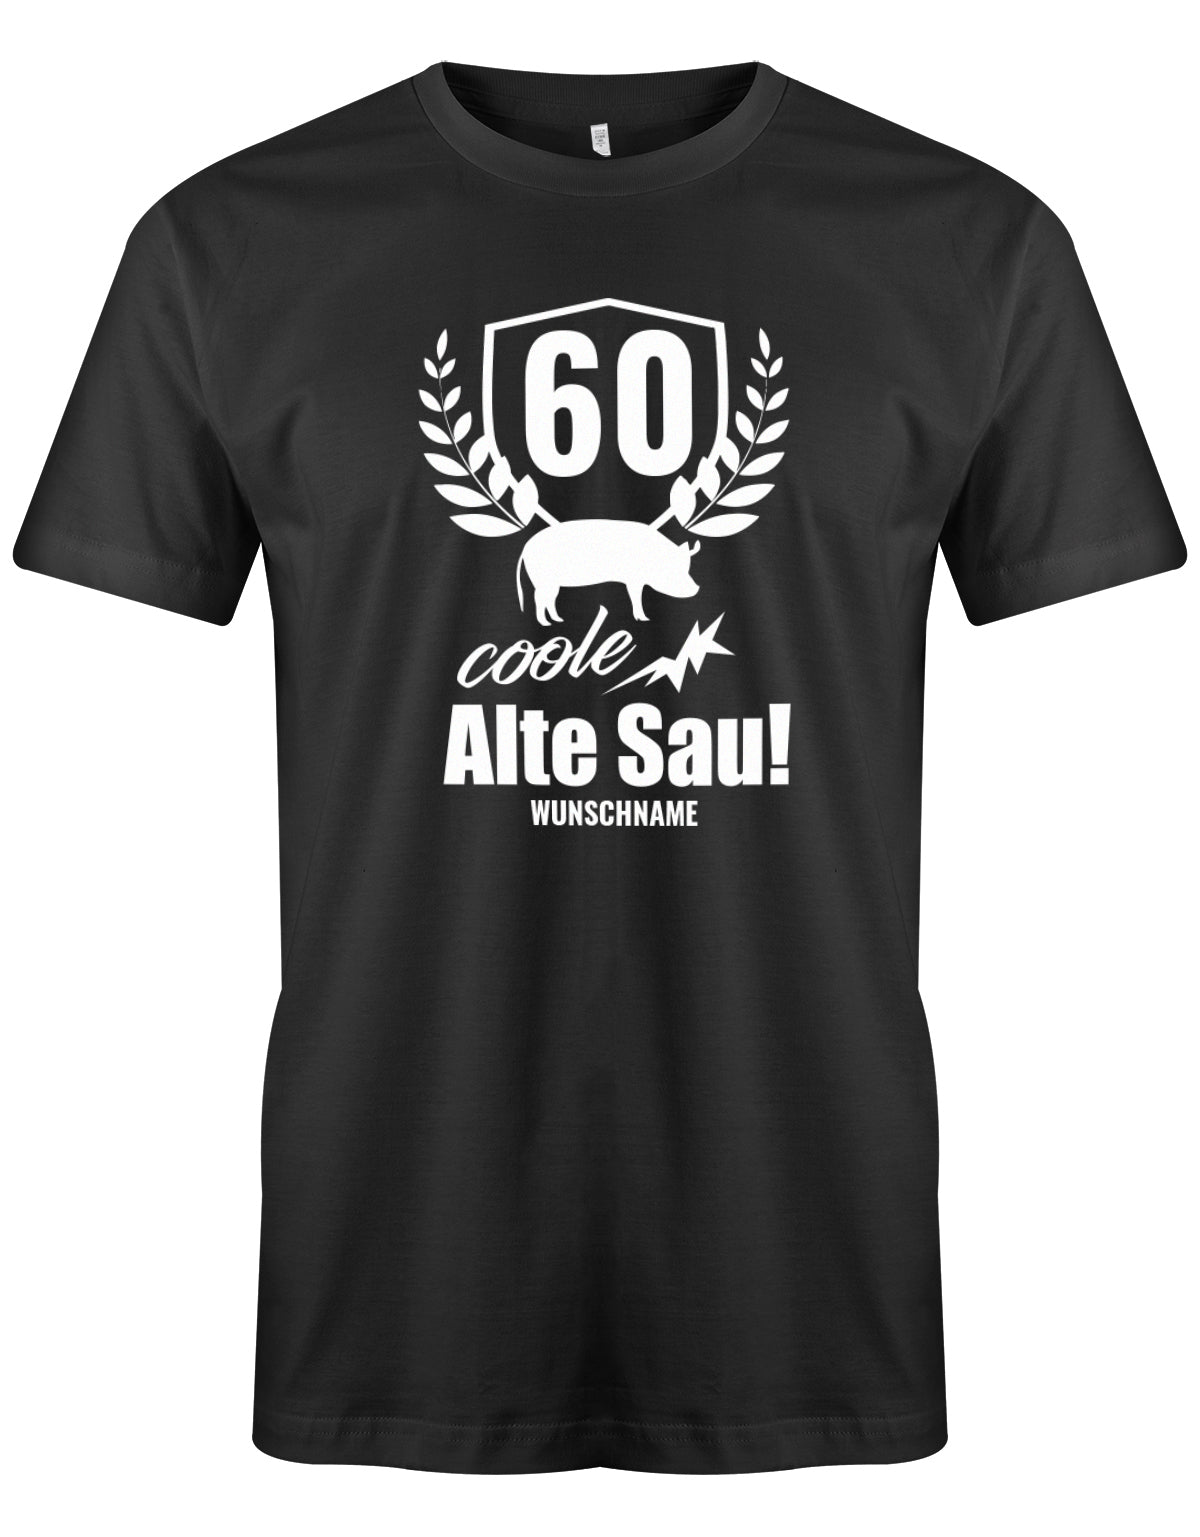 Lustiges T-Shirt zum 60. Geburtstag für den Mann Bedruckt mit 60 coole Alte Sau! mit Wunschname. Schwarz